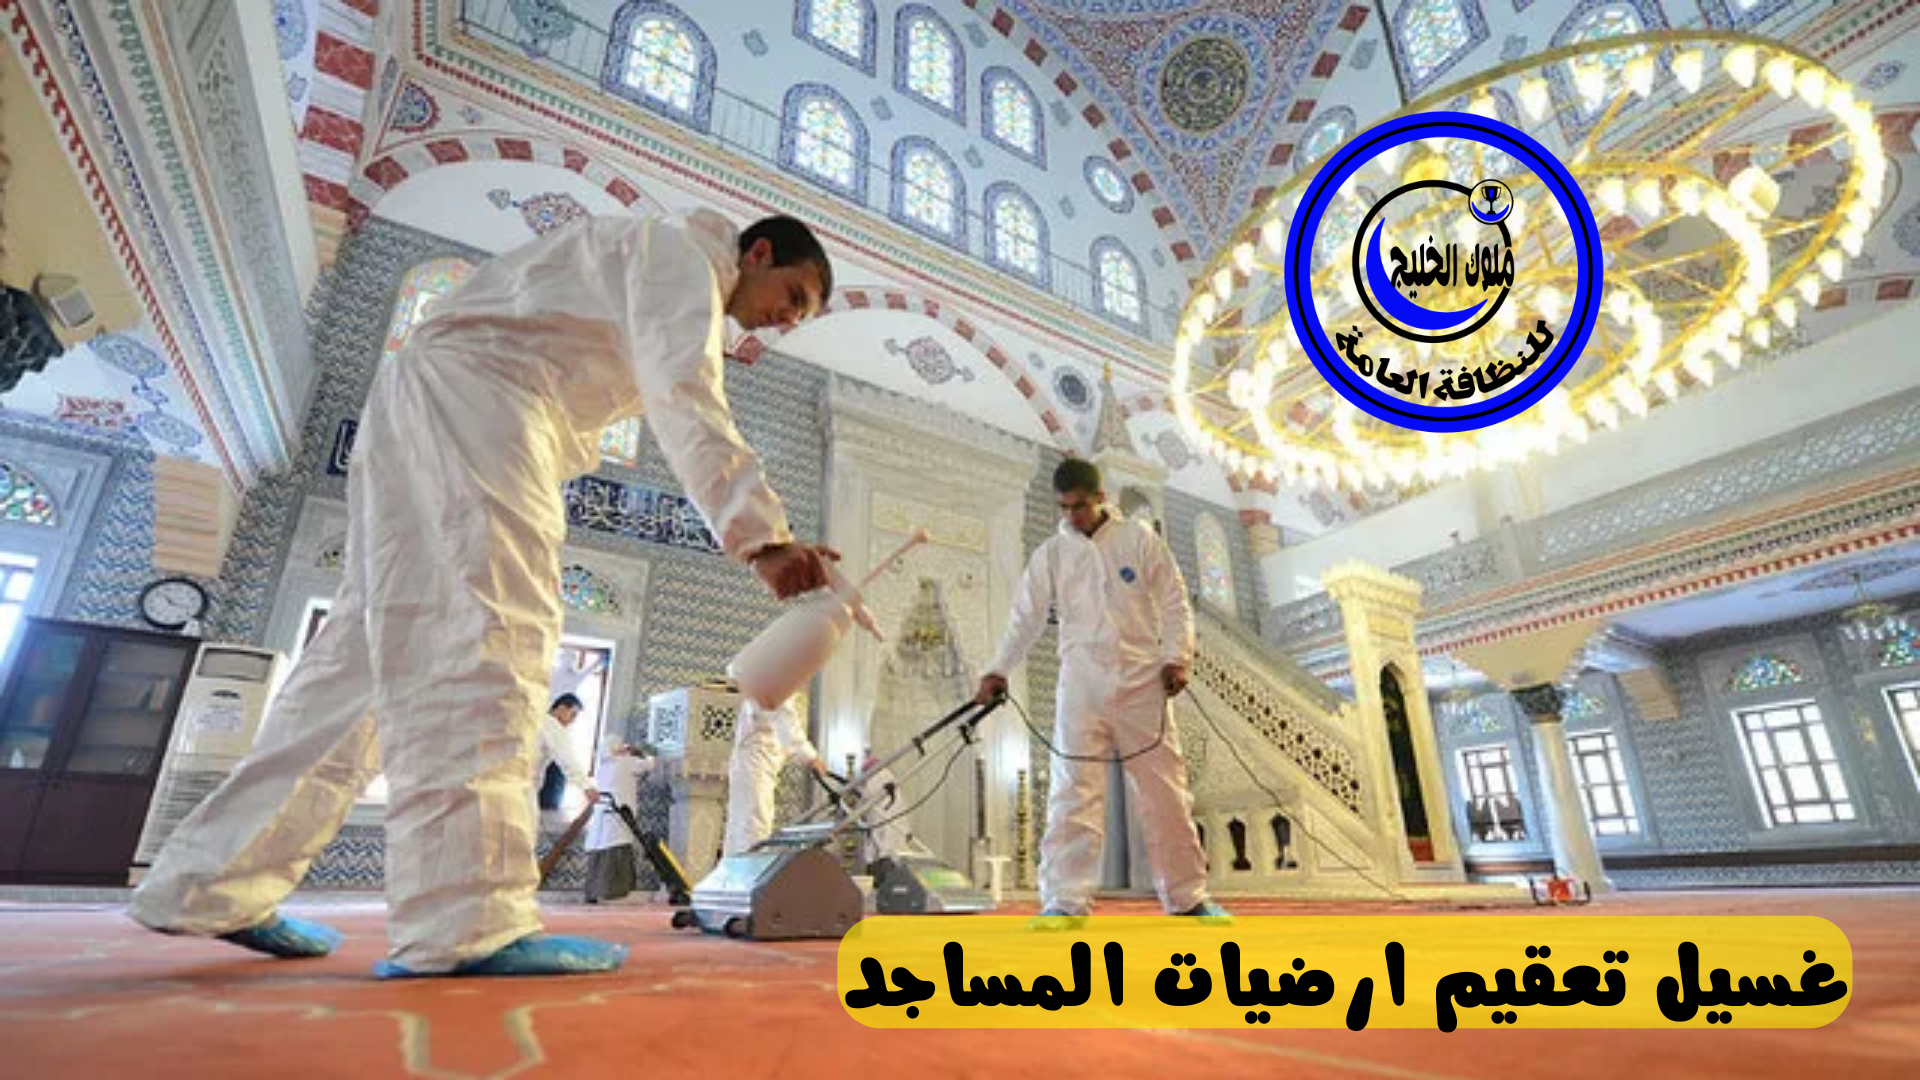 شركة تنظيف مساجد بخميس مشيط 0500686439 اقوي عروض وخصومات شهر رمضان المبارك 